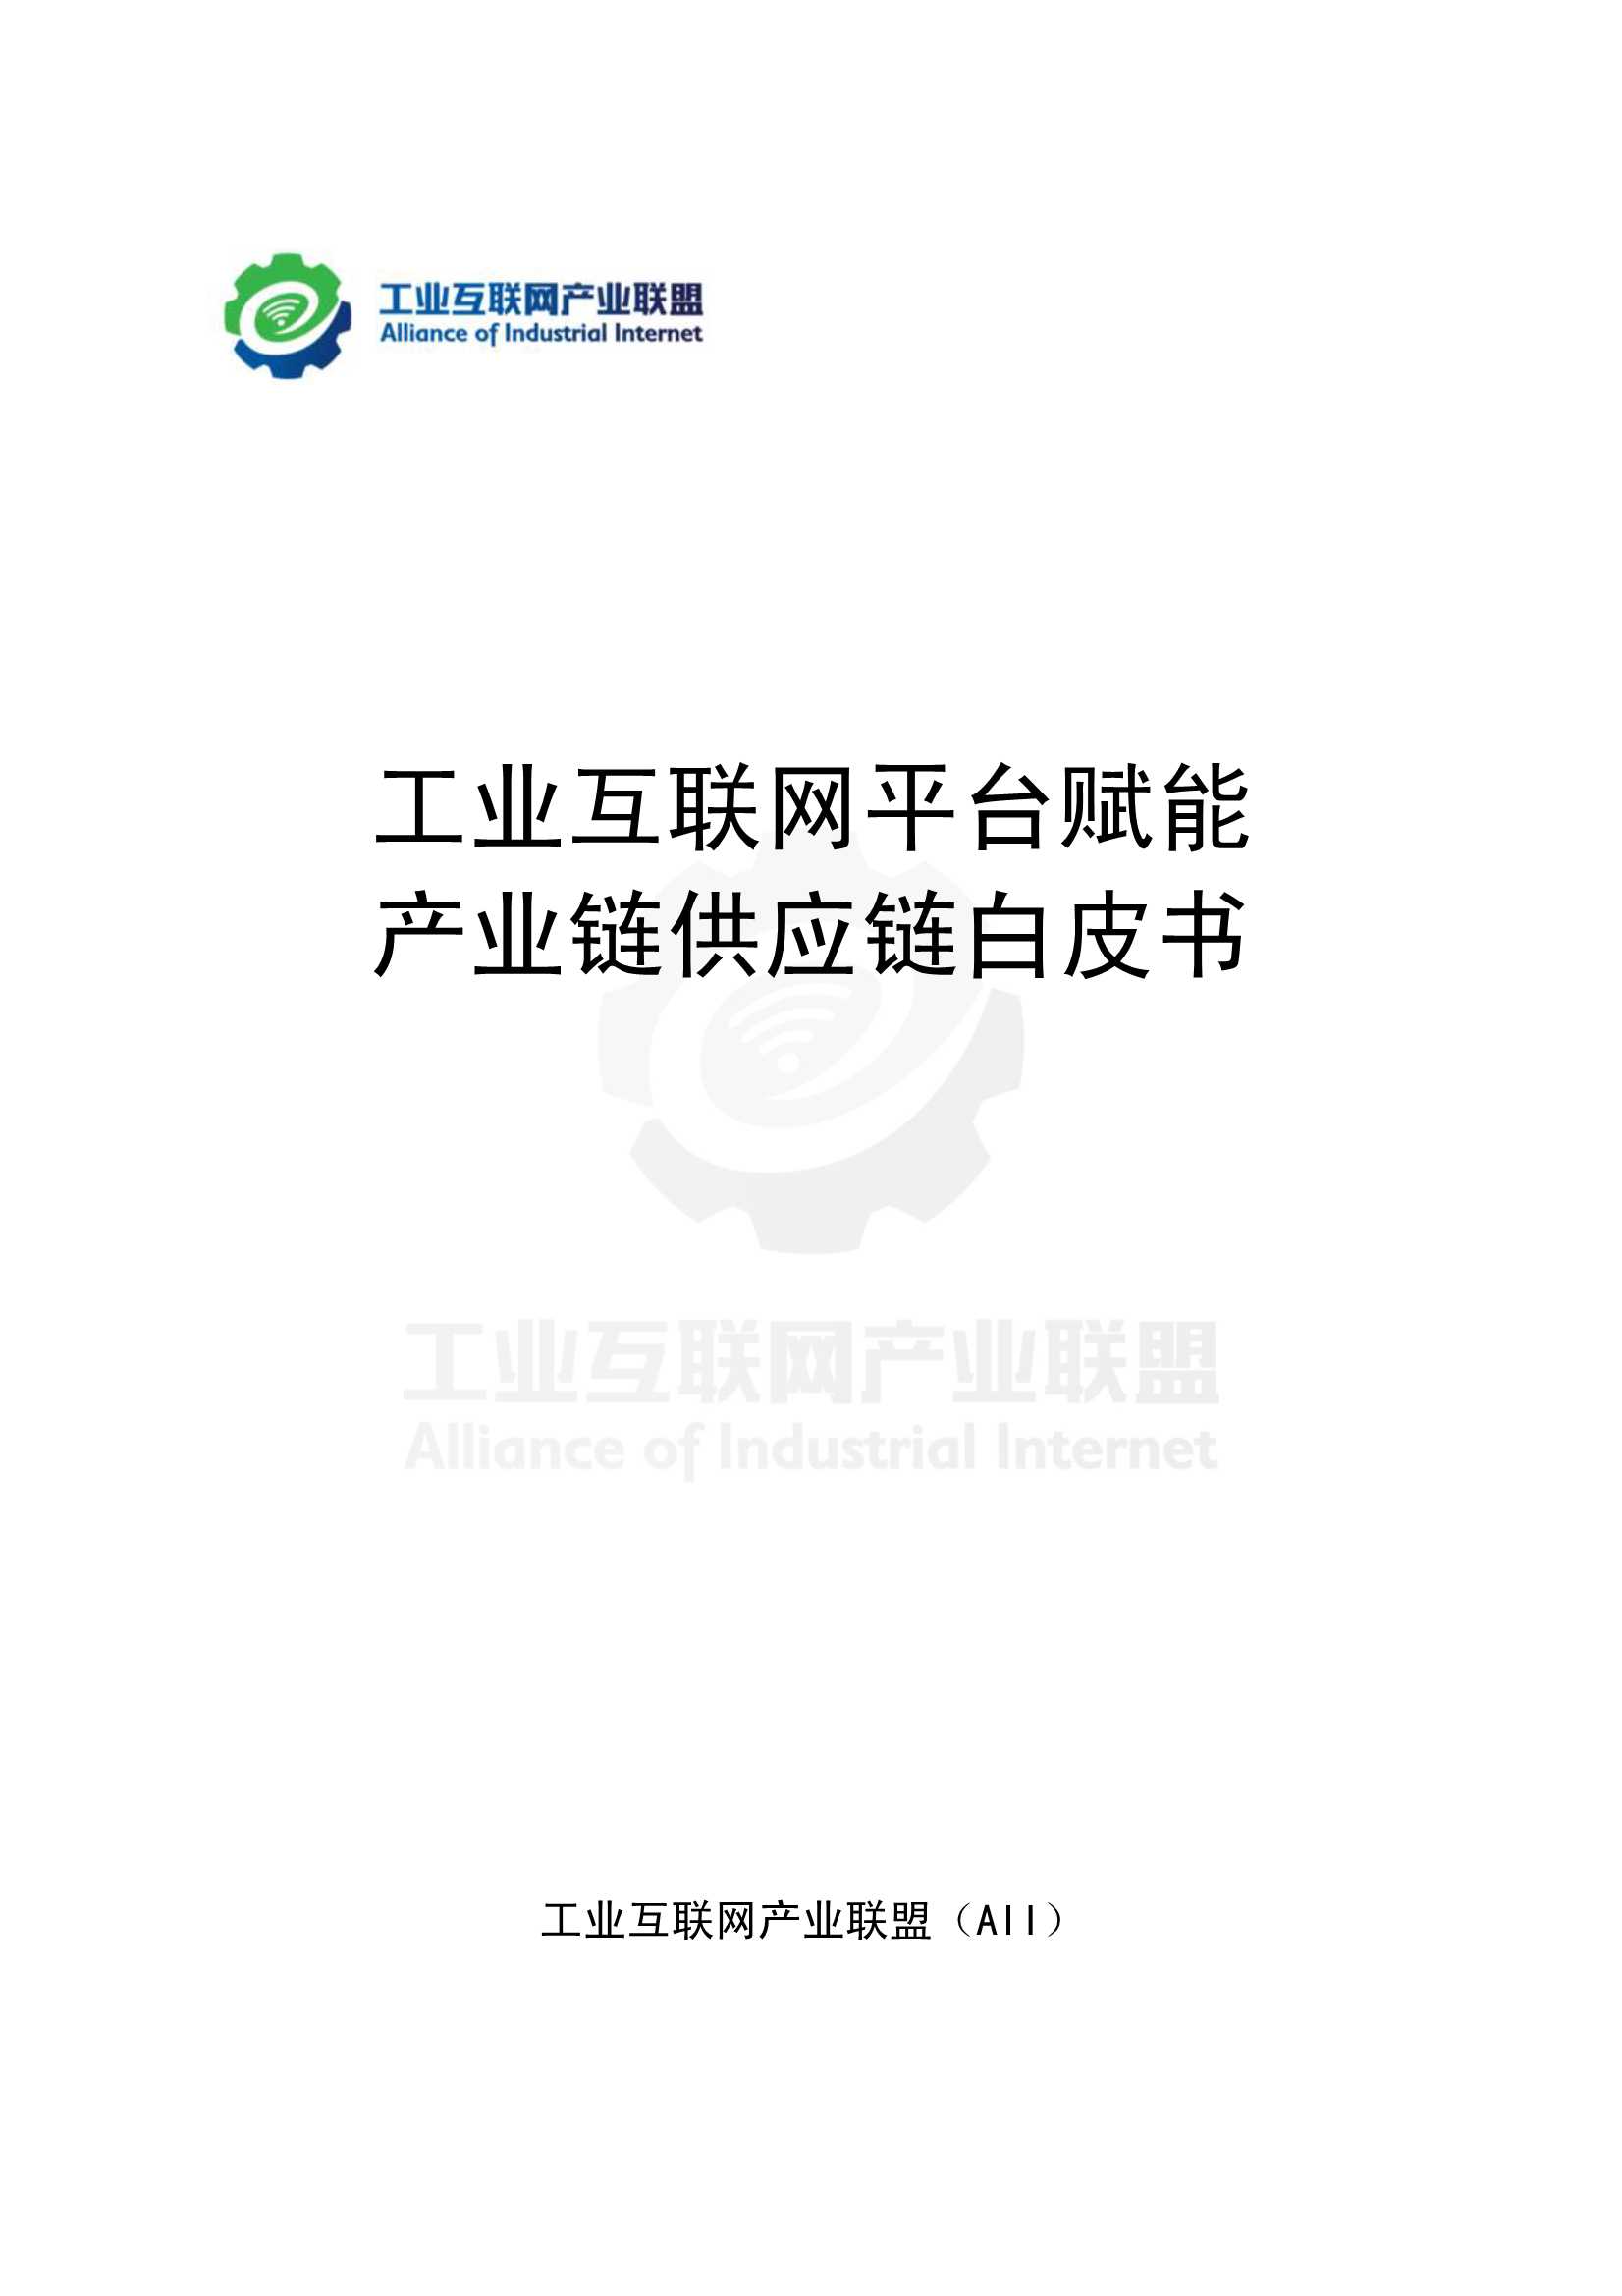 产业联盟-工业互联网平台赋能 产业链供应链白皮书-2022.01-208页